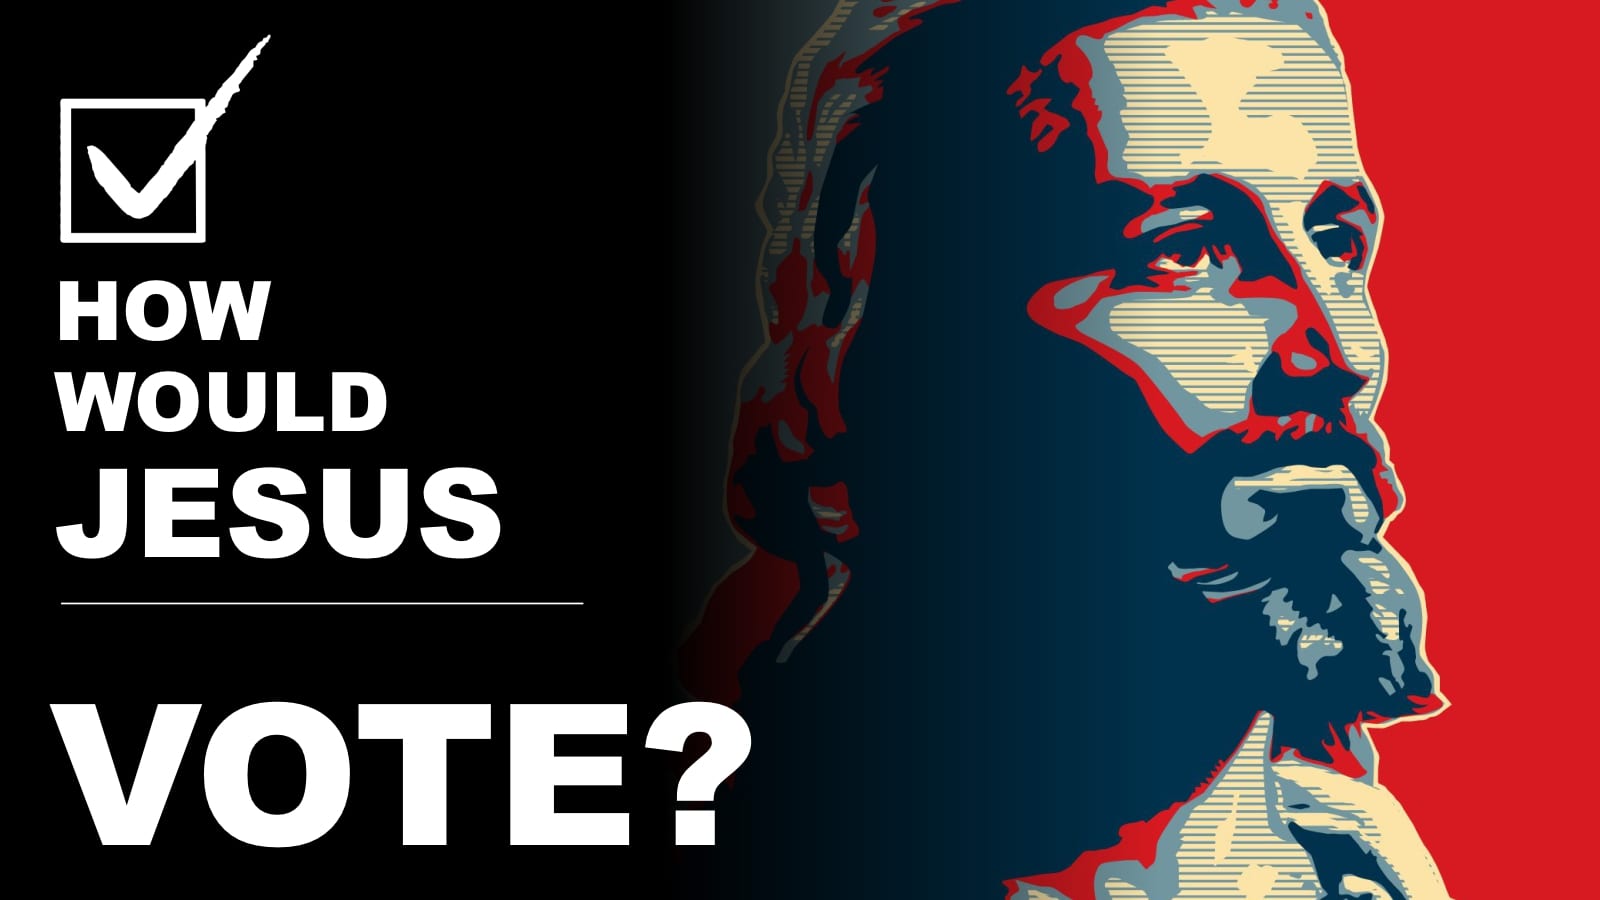 Is Jesus a Democrat or a Republican?